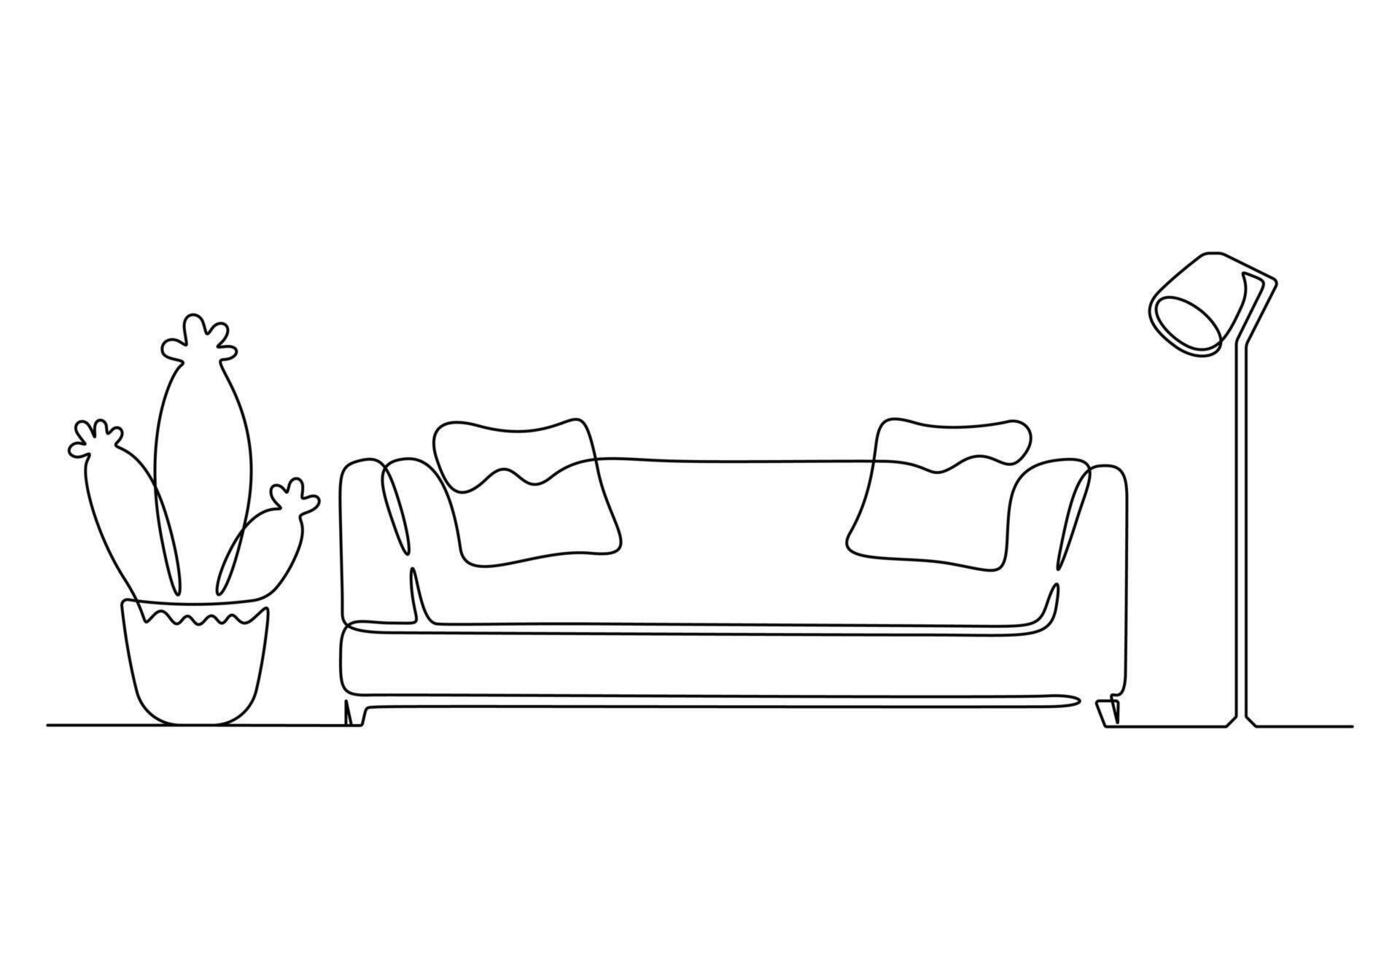 kontinuierlich einer Linie Zeichnung von Couch oder Sofa mit Lampe und eingetopft Pflanze. modern Möbel einfach linear Stil Vektor Illustration